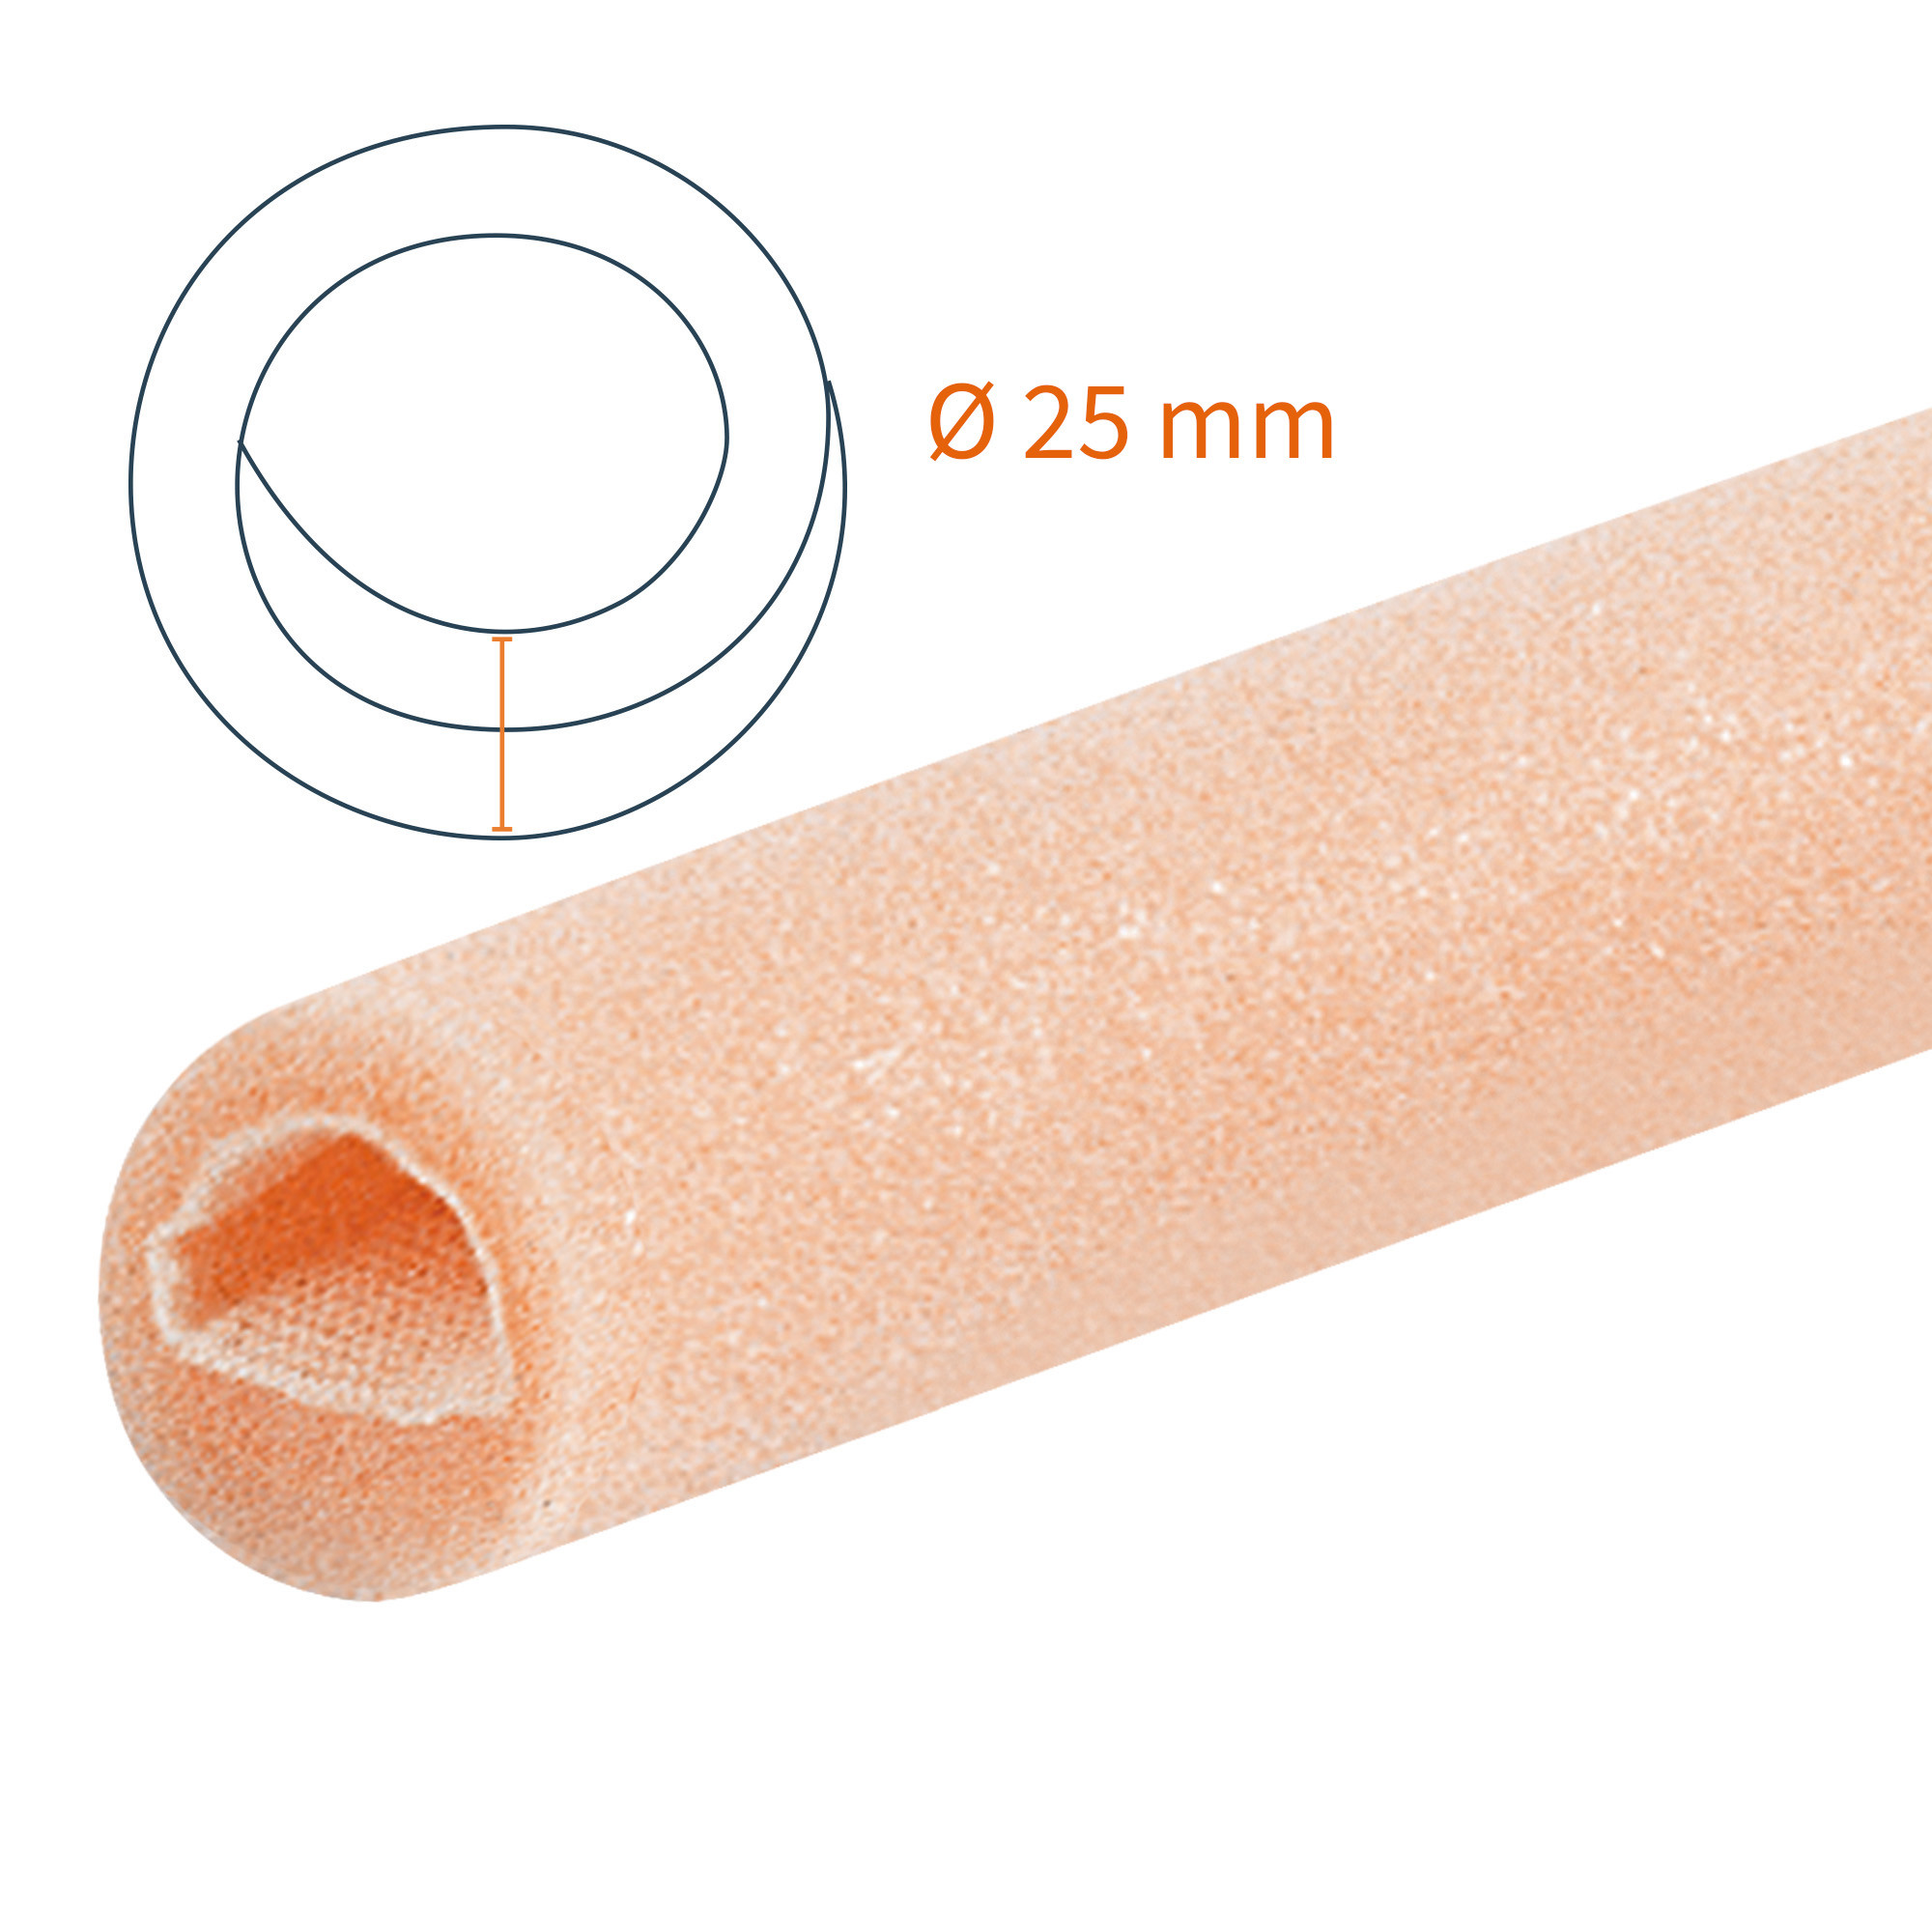 Protezione tubolare a doppio strato Tubifoam 25 mm DX 12 pz